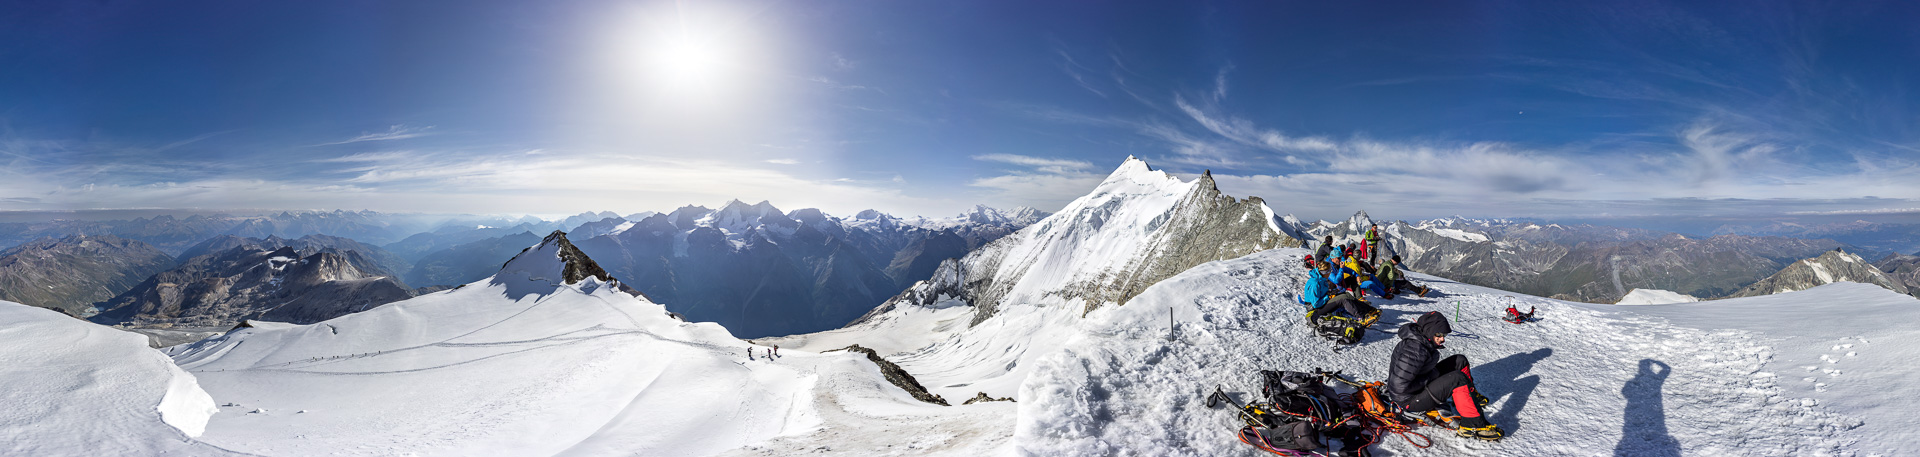 Gipfelpanorama: Es dominiert das Weisshorn, doch auch sonst ist viel Prominenz zu sehen!